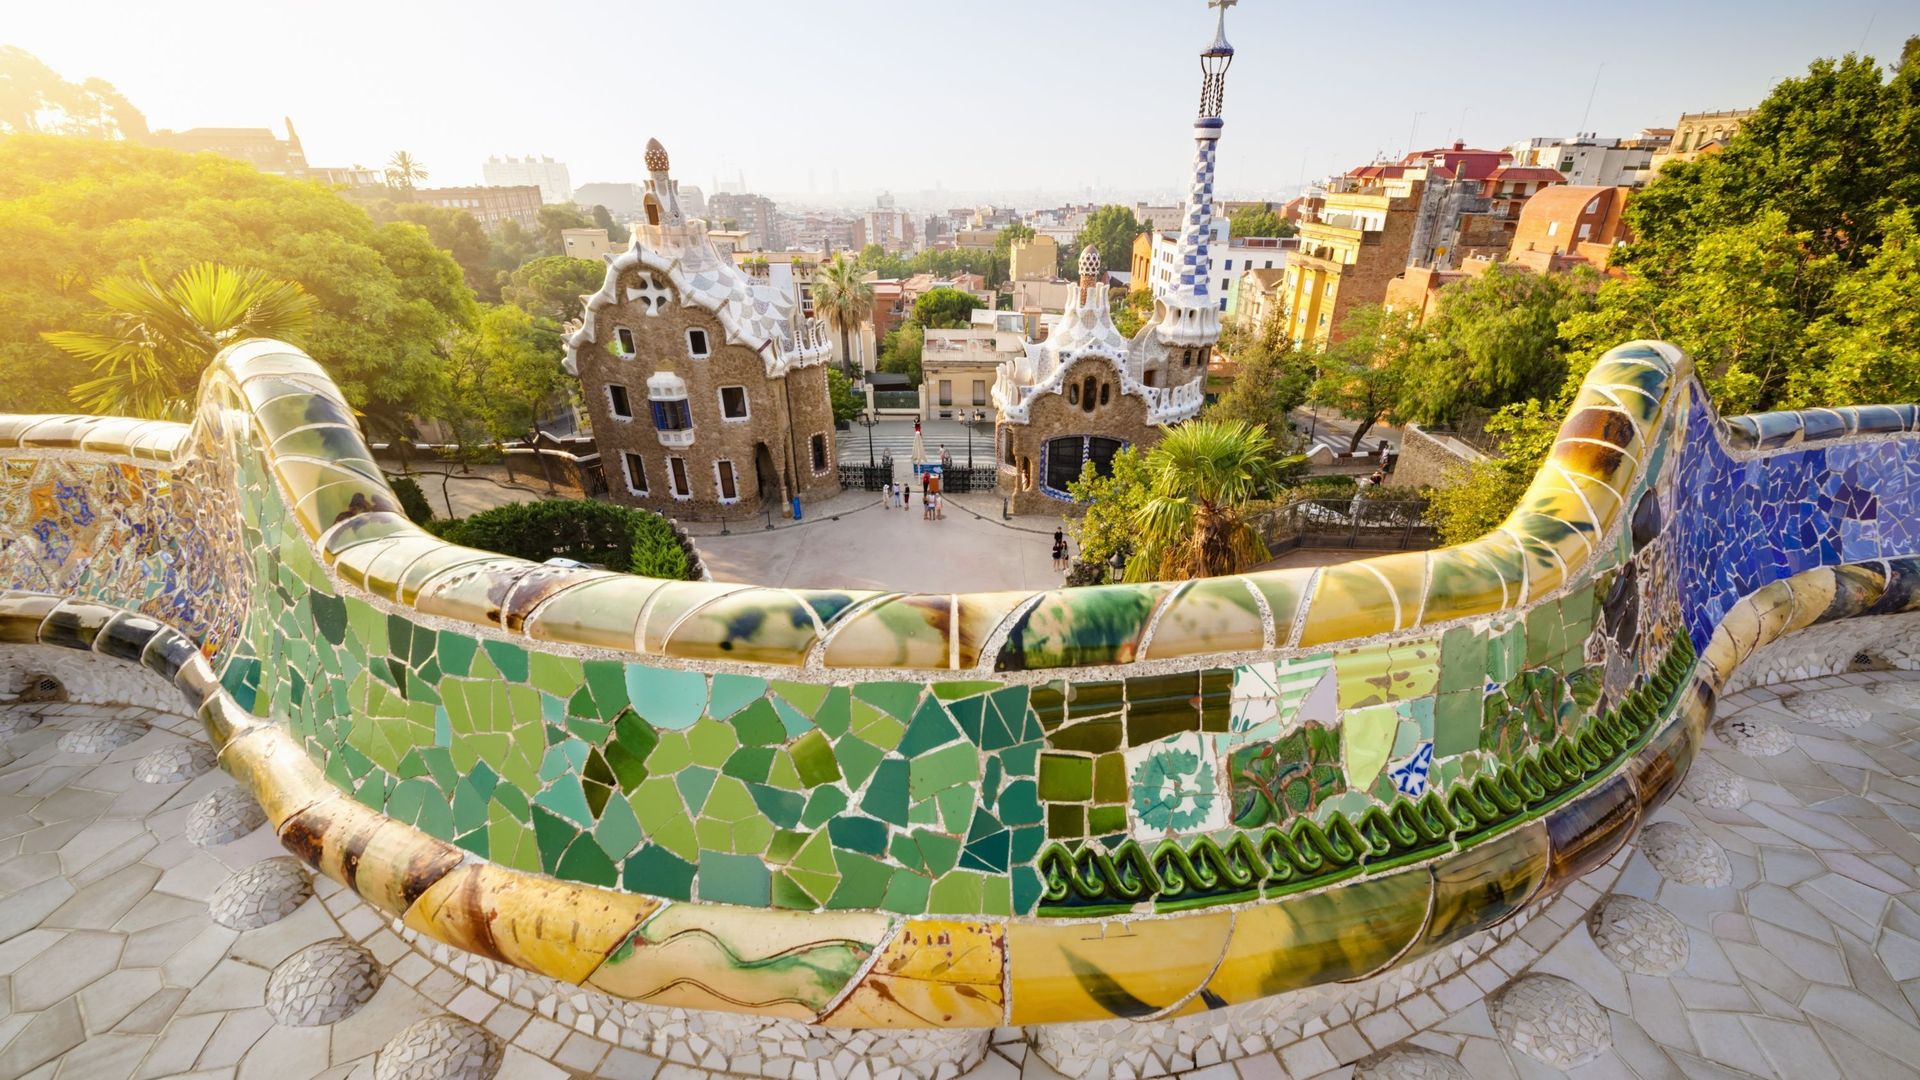 Le Parc Güell est l’une des réalisations de l’architecte catalan Antoni Gaudí à Barcelone qui figure sur la liste du patrimoine mondial de l’UNESCO. Il fut édifié entre 1900 et 1914.